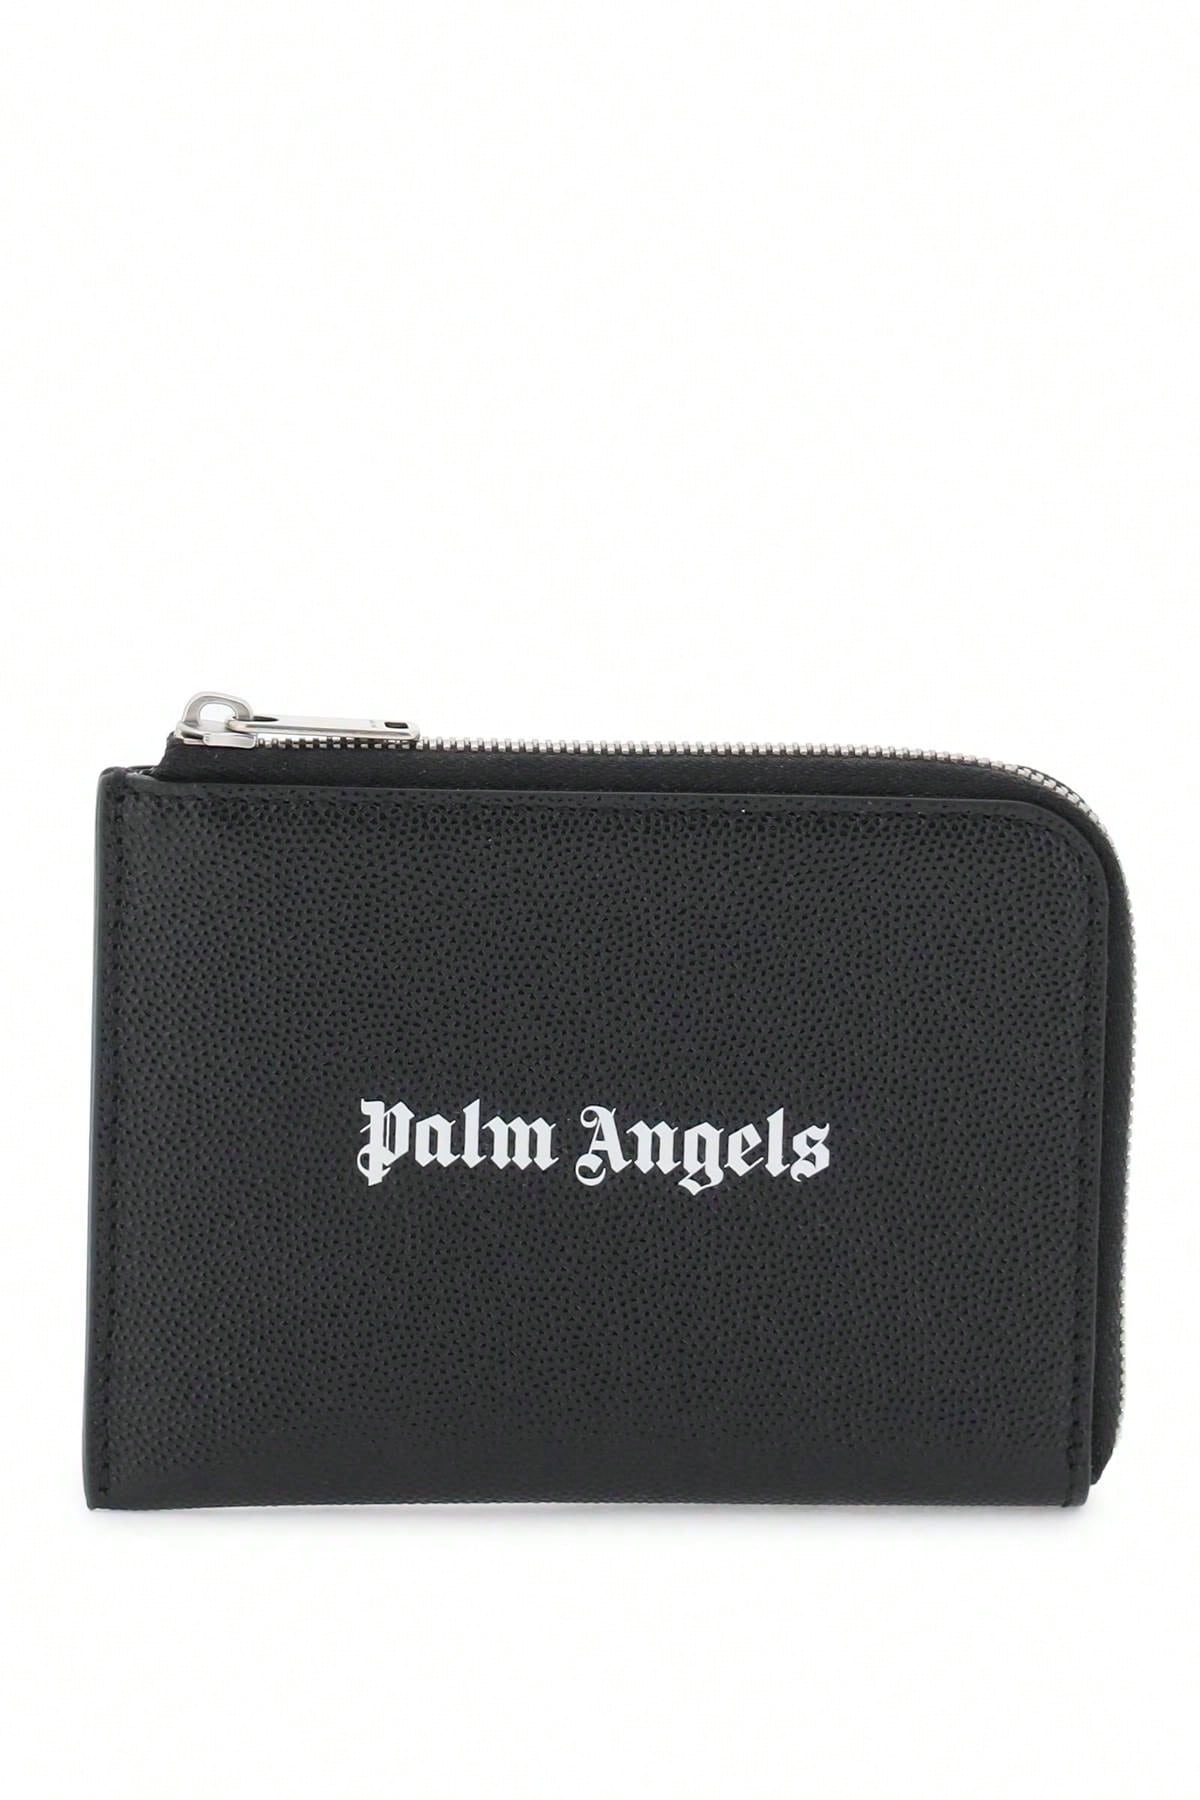 белые солнцезащитные очки angel palm angels Palm Angels Миниатюрная сумка Palm Angels с выдвижным картхолдером, черный